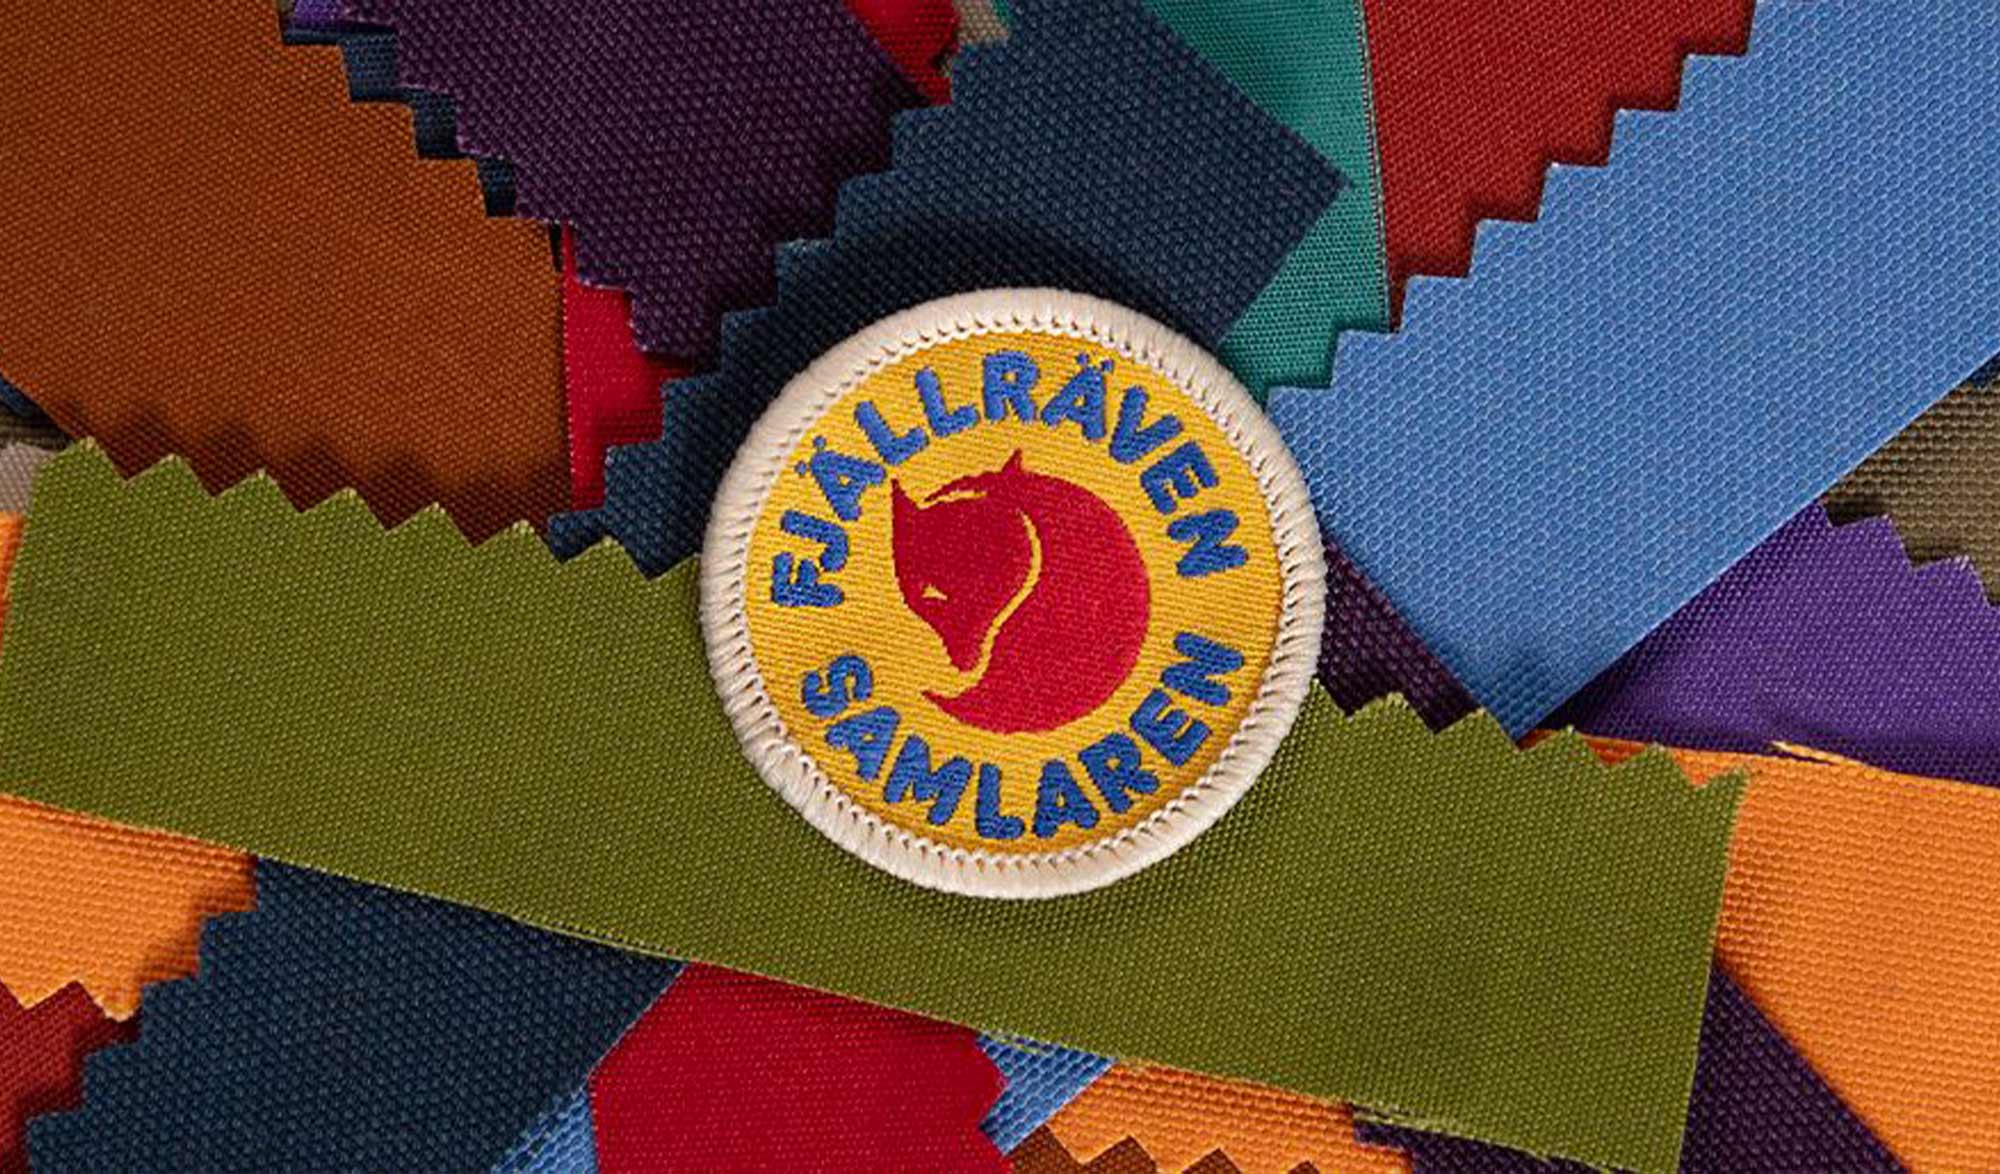 Collection Samlaren de Fjallraven conçu à partir de chute de tissu